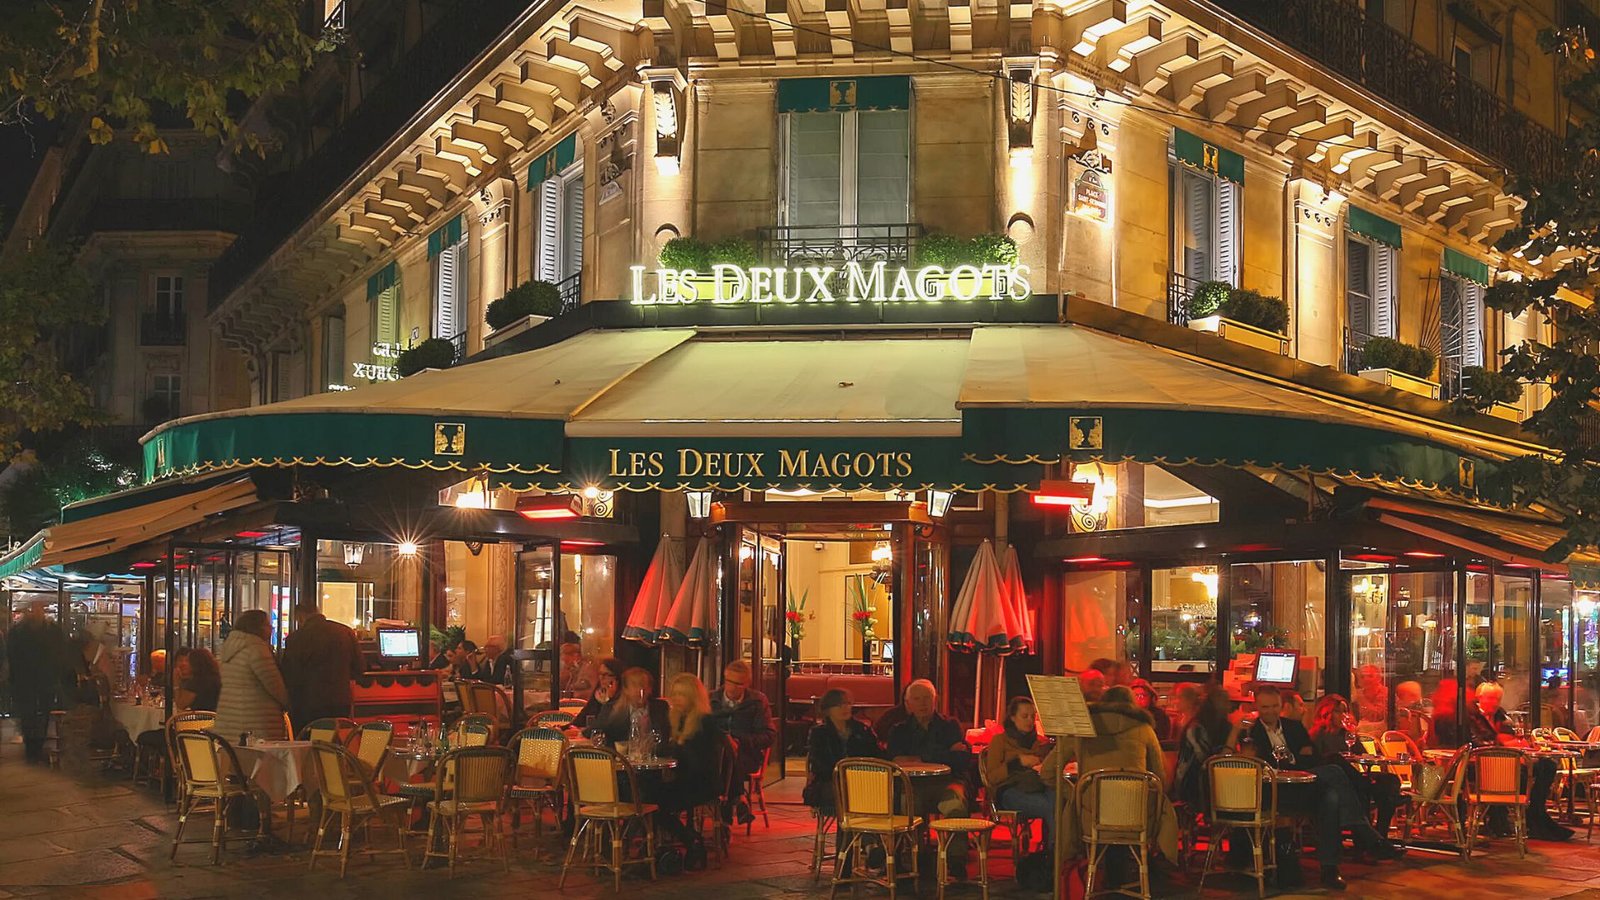 Una cena romántica en Paris